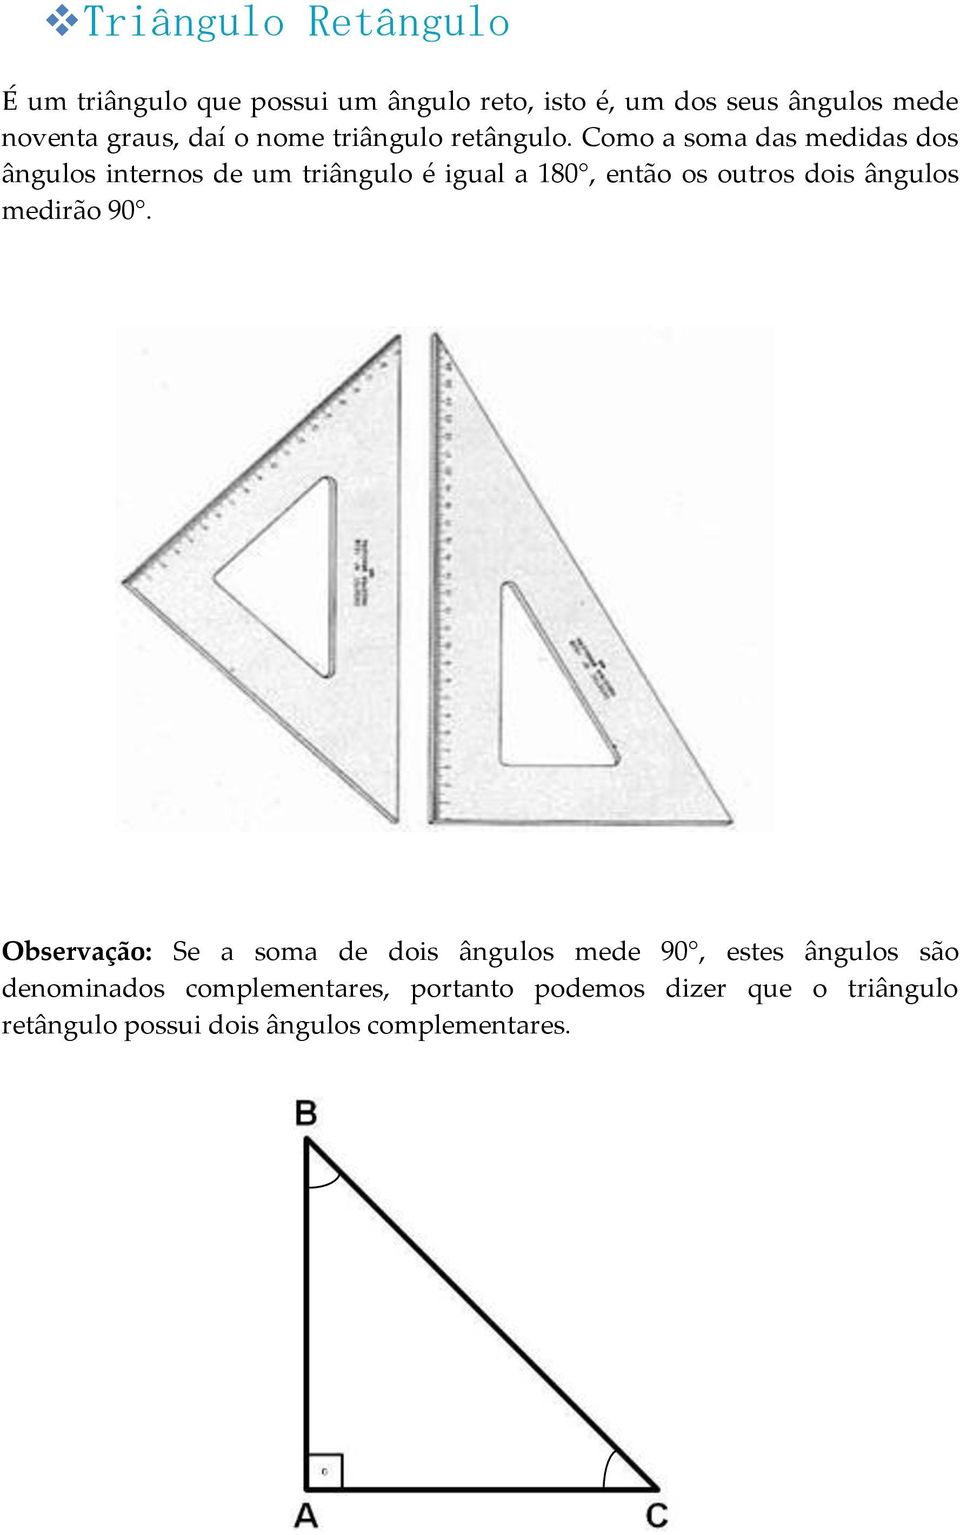 Como a soma das medidas dos ângulos internos de um triângulo é igual a 180, então os outros dois ângulos